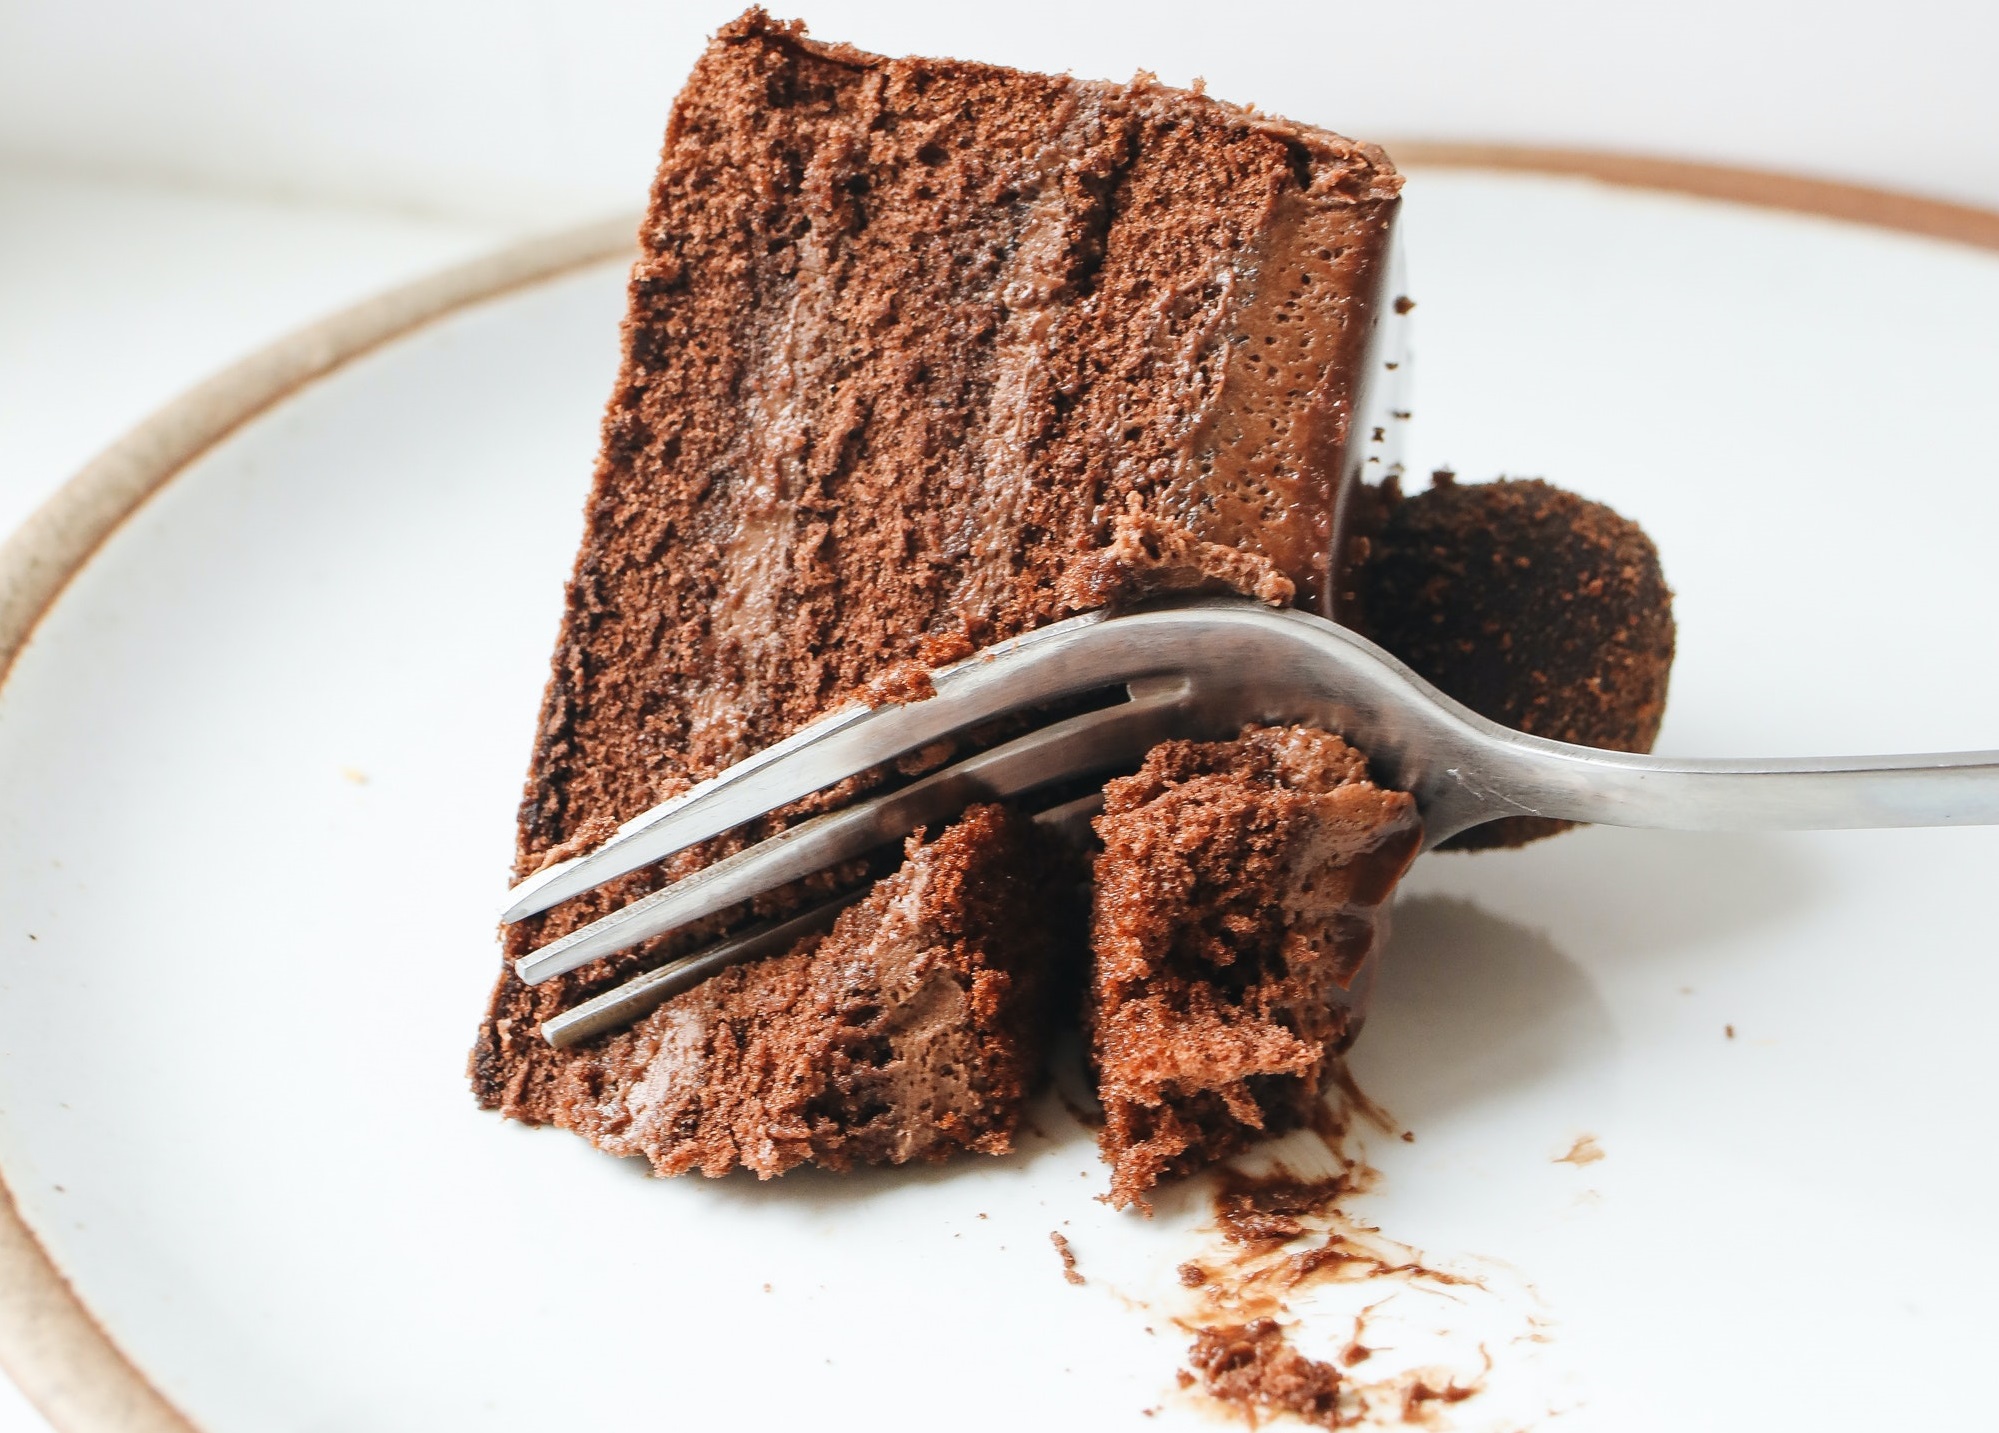 Десерт на Старый Новый год: самый простой рецепт шоколадного торта